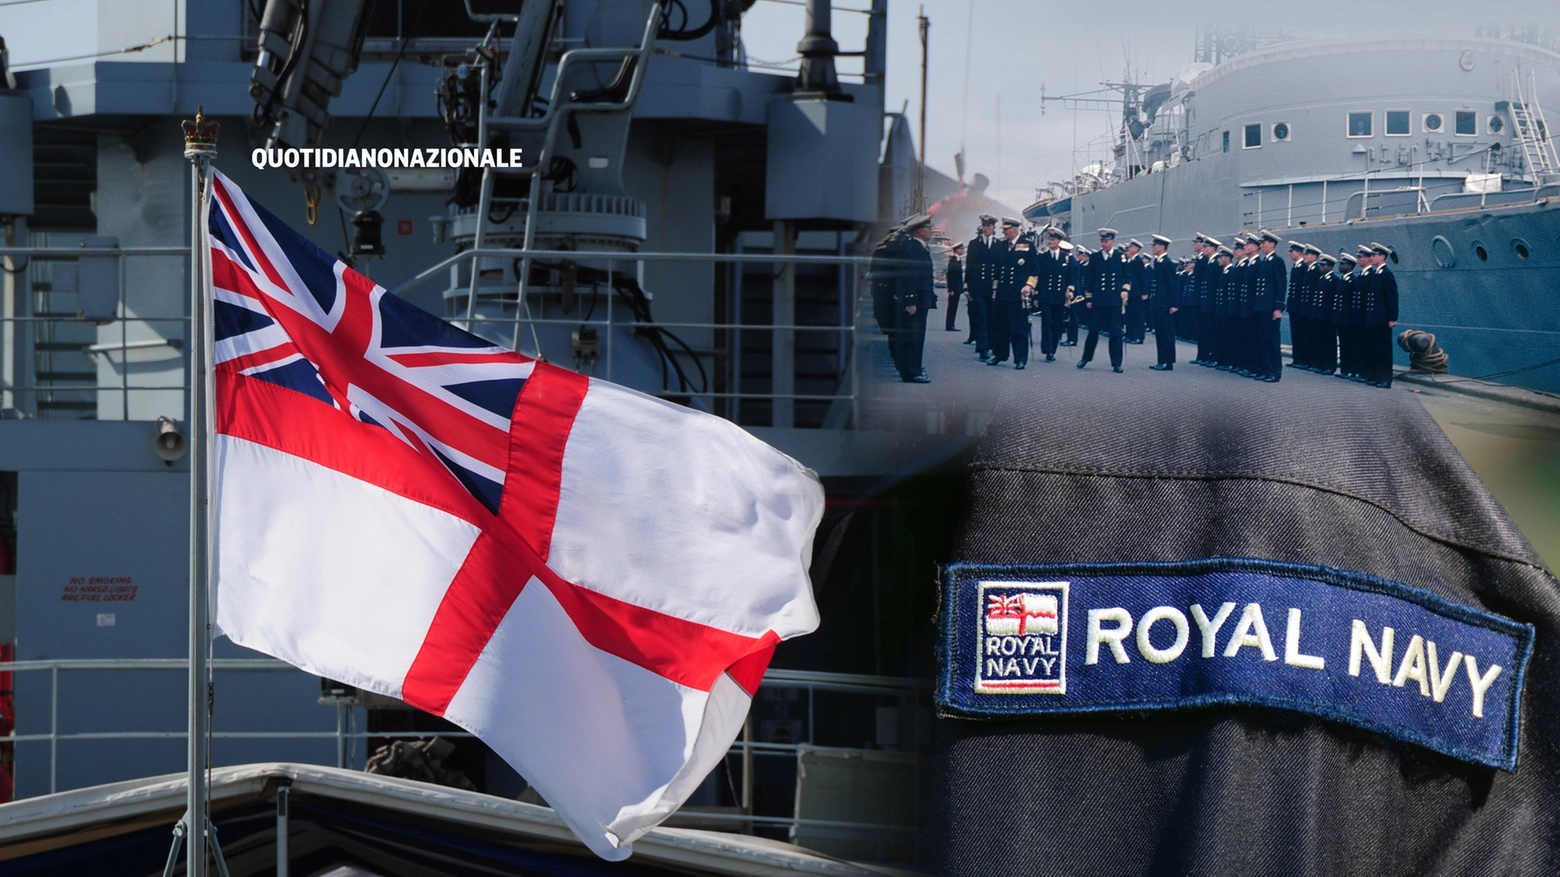 Scandalo nella Royal Navy, media: indagine per abusi sessuali (repertorio)